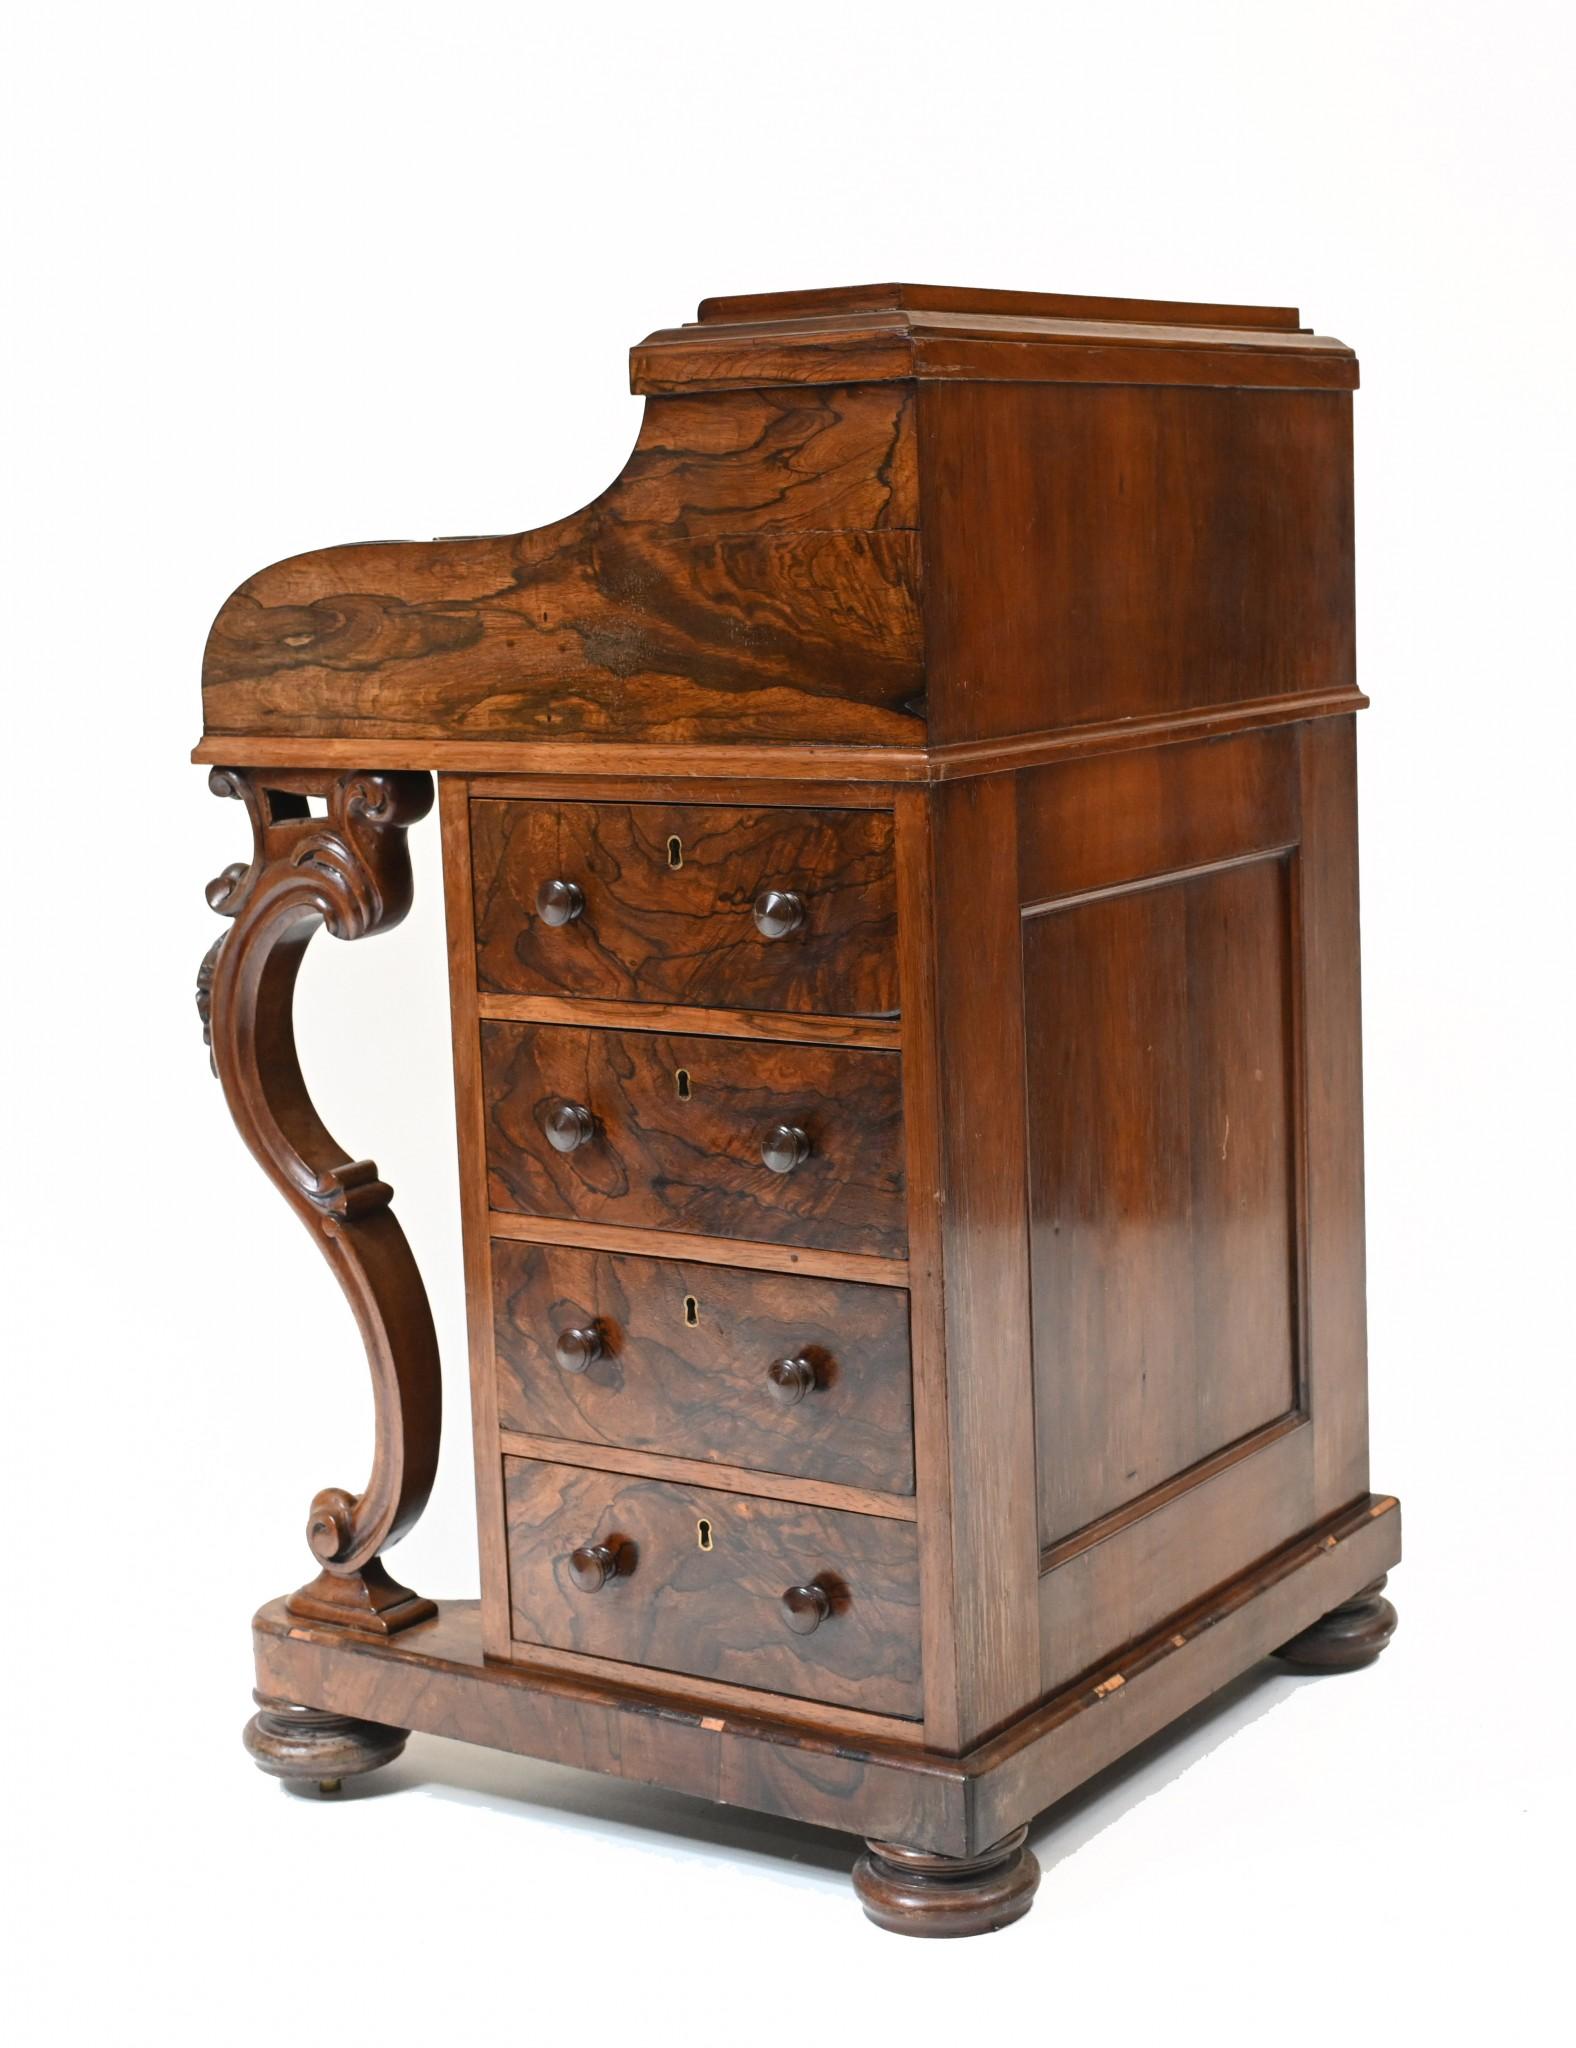 Rosewood Victorian Davenport Desk Pop Up Mechanism, 1860